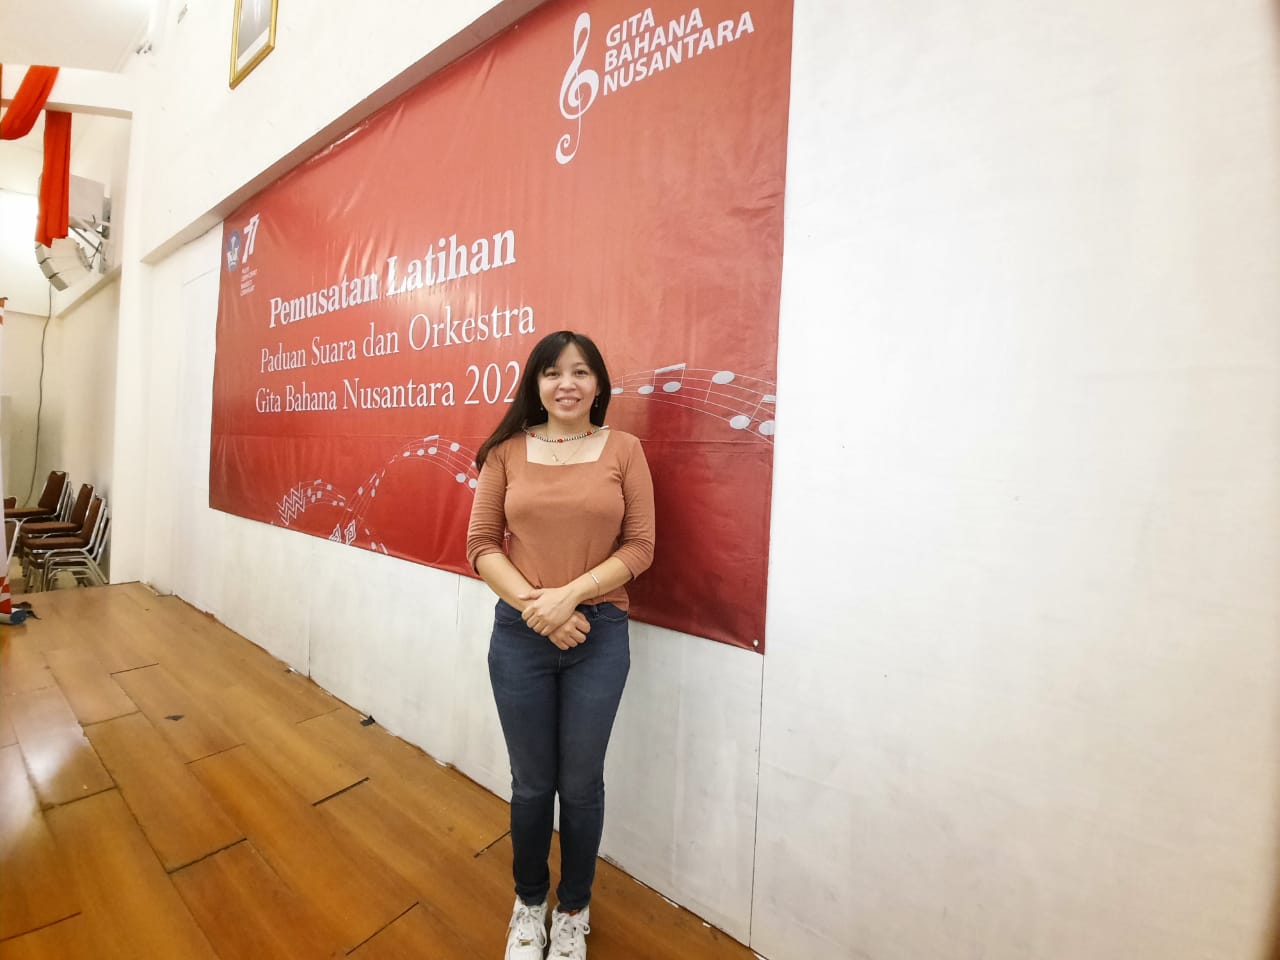 Nathania, Konduktor Perempuan Pertama Gita Bahana Nusantara Doktor Lulusan Boston University